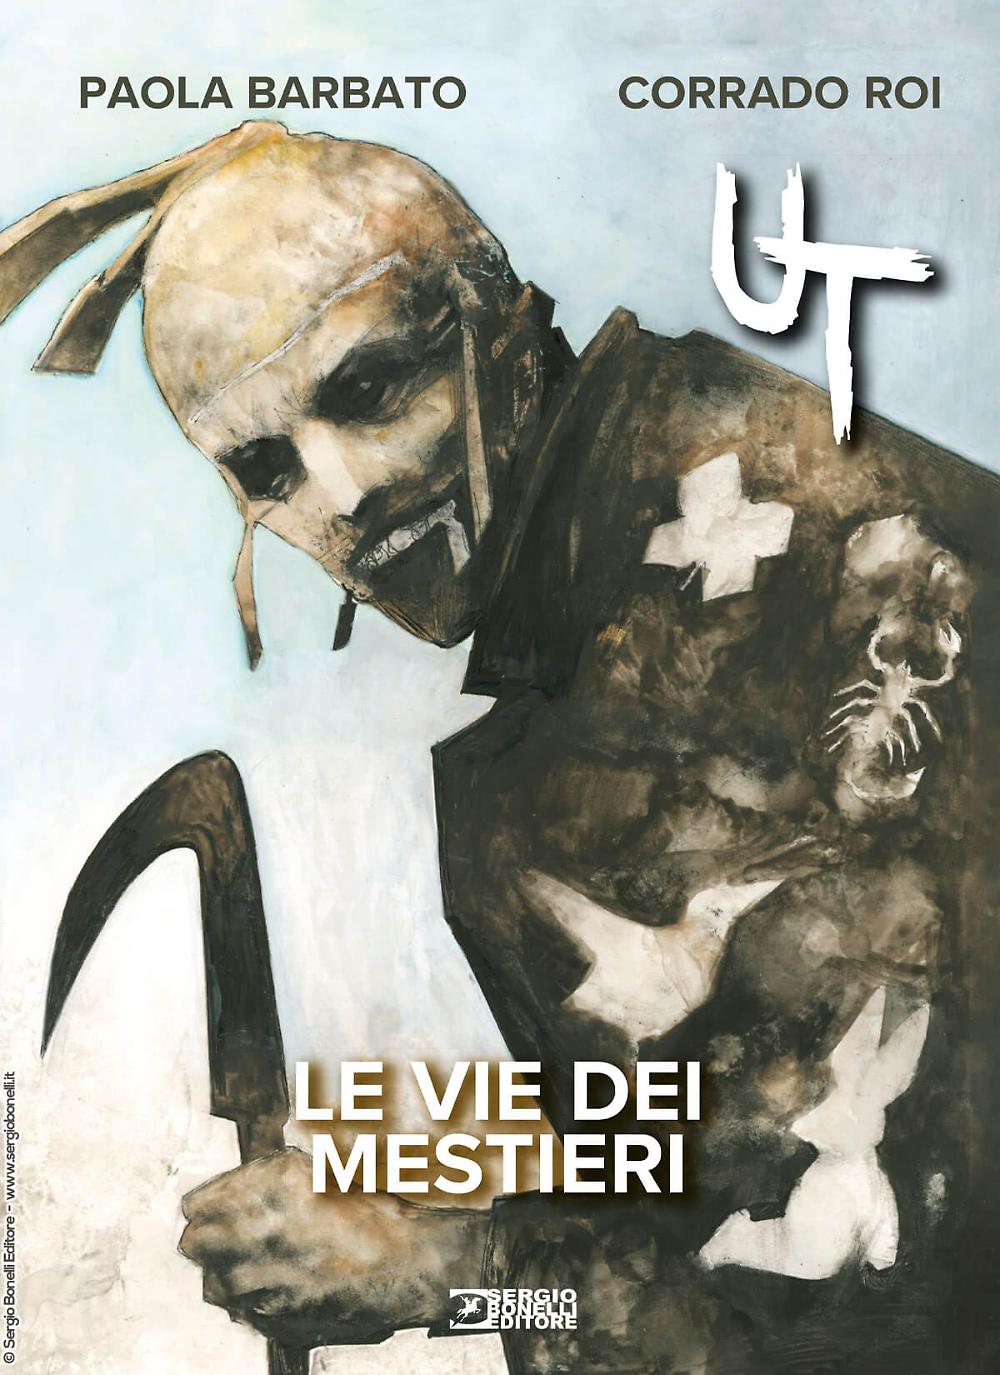 Sergio Bonelli Editore presents “UT. THE VIE DEI MESTIERI” by Paola Barbato and Corrado Roi